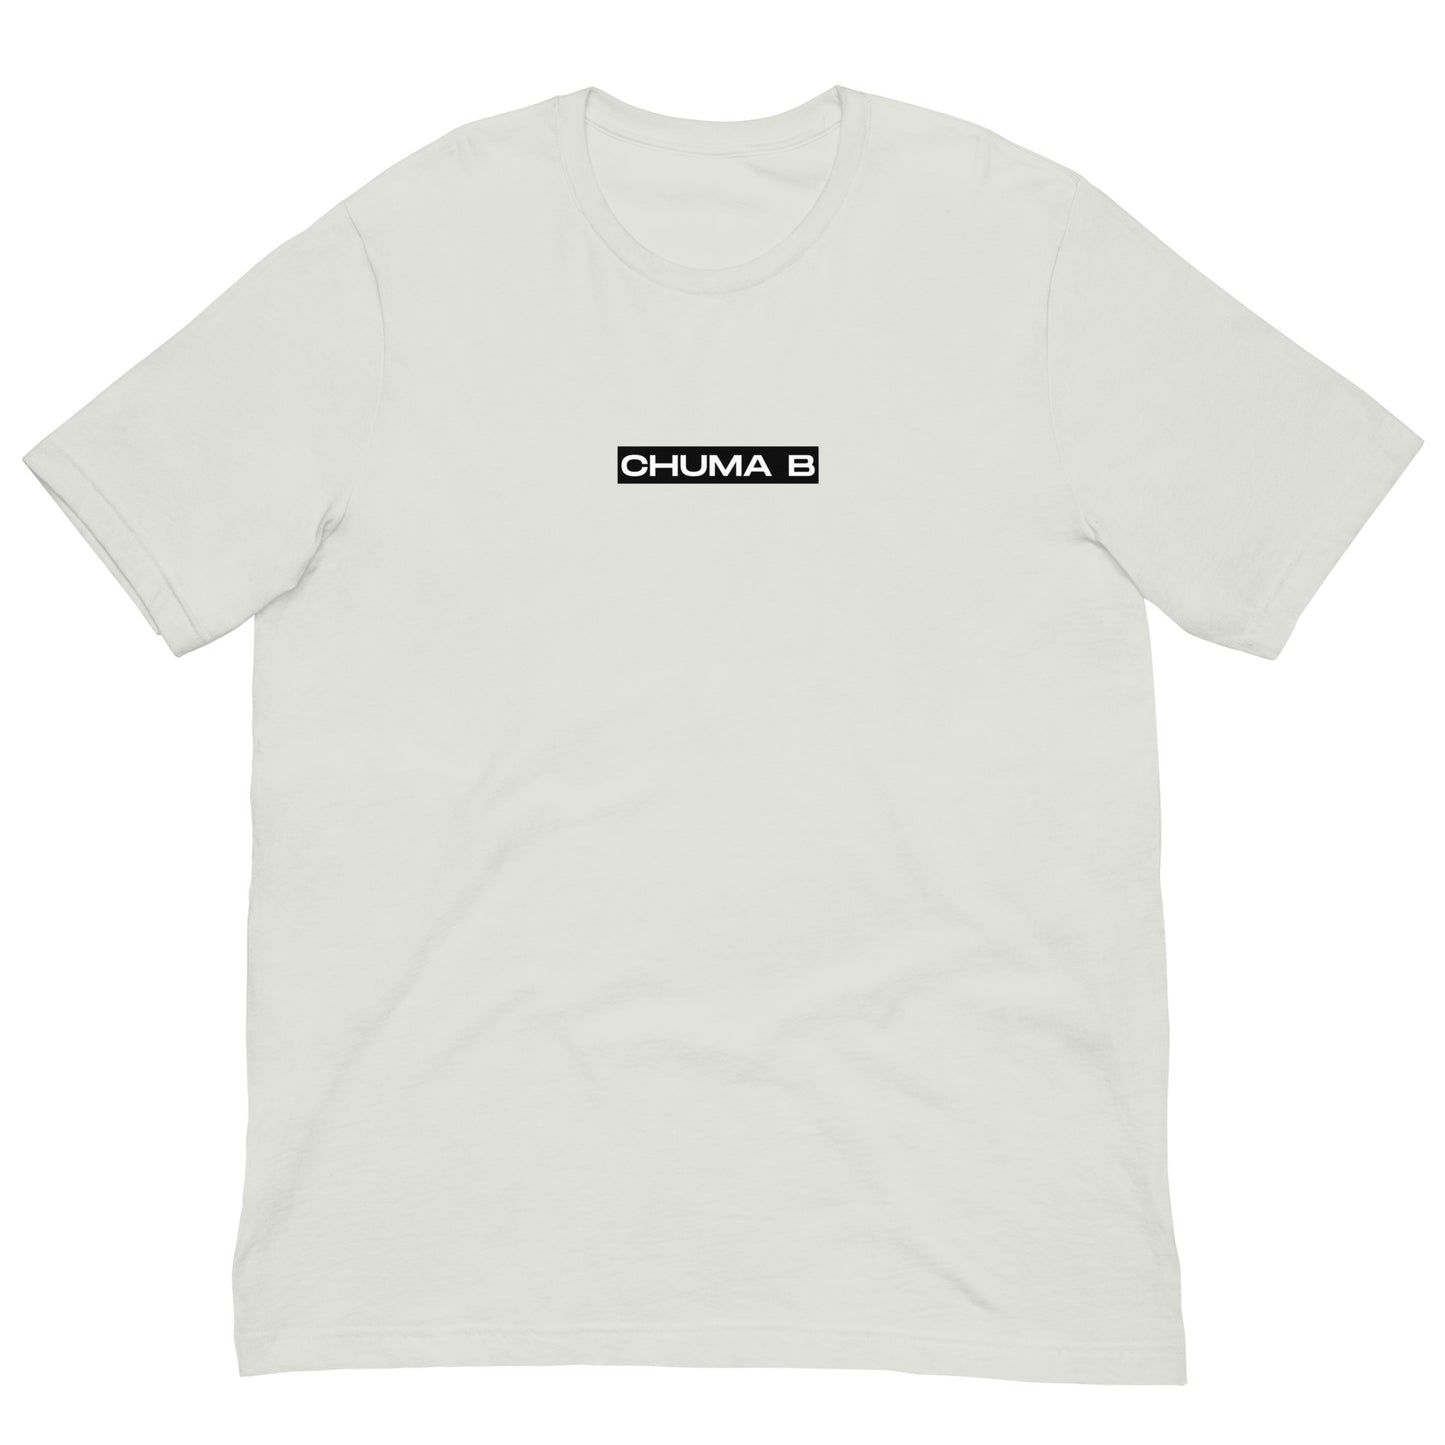 CHUMA B - T-shirt